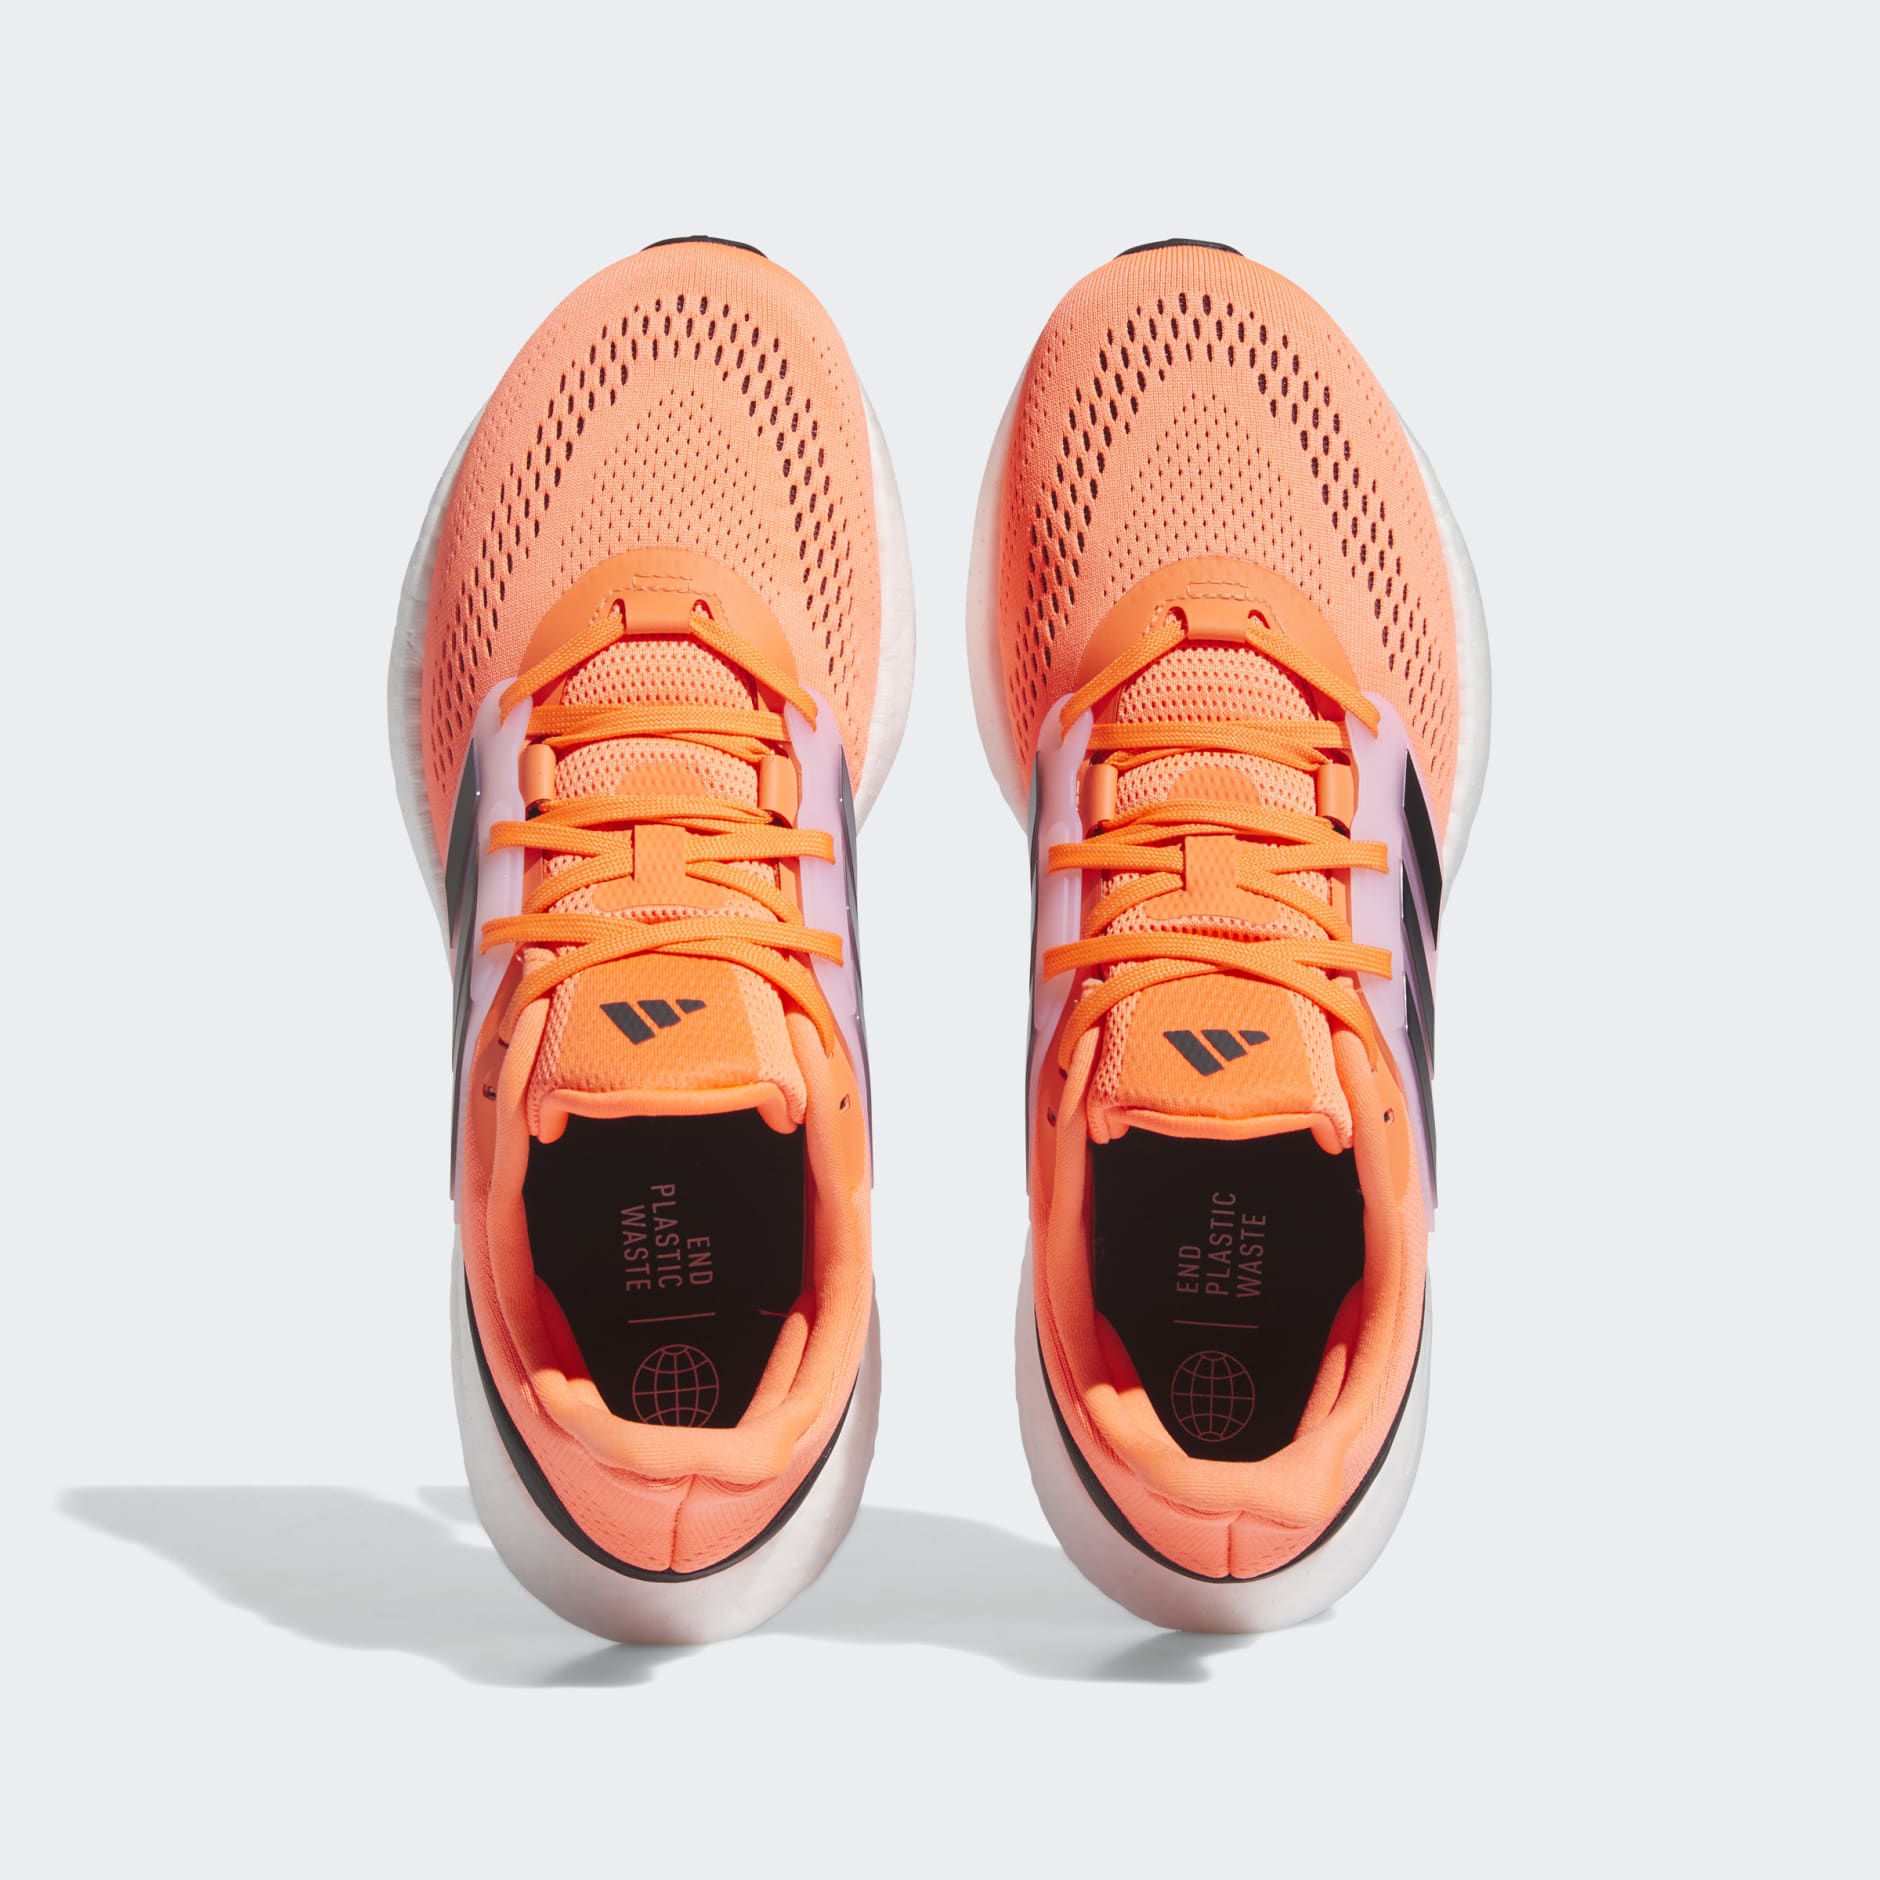 adidas Originals sneakers Gazelle Bold orange color | buy on PRM